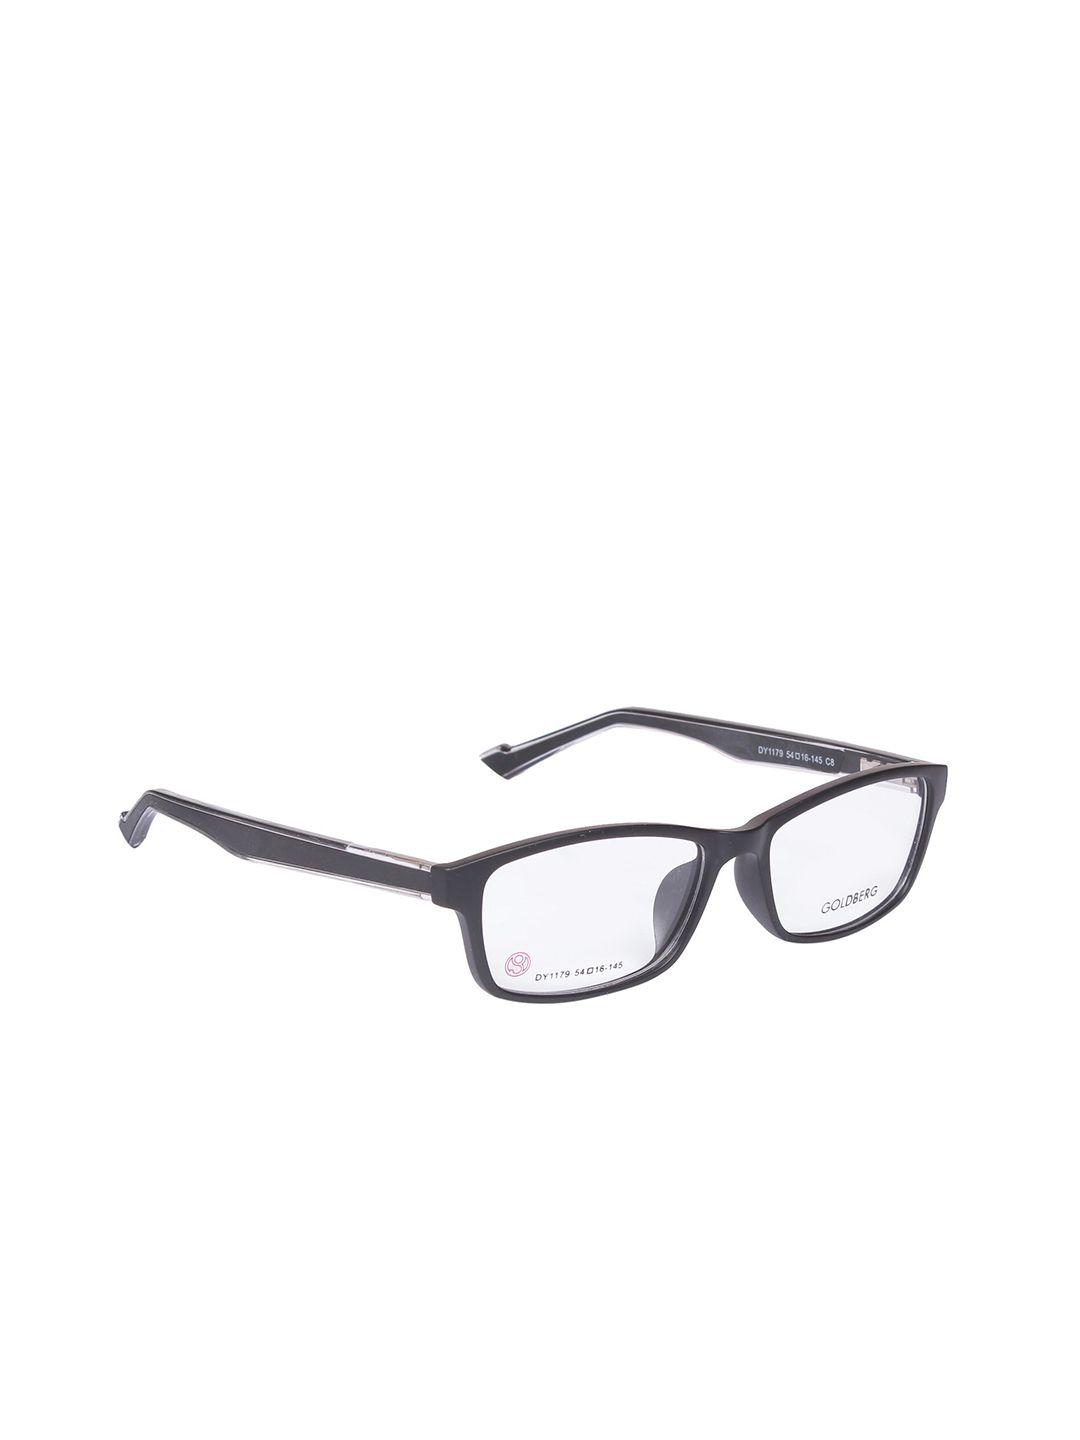 gold-berg-black-full-rim-wayfarer-frames-eyeglasses